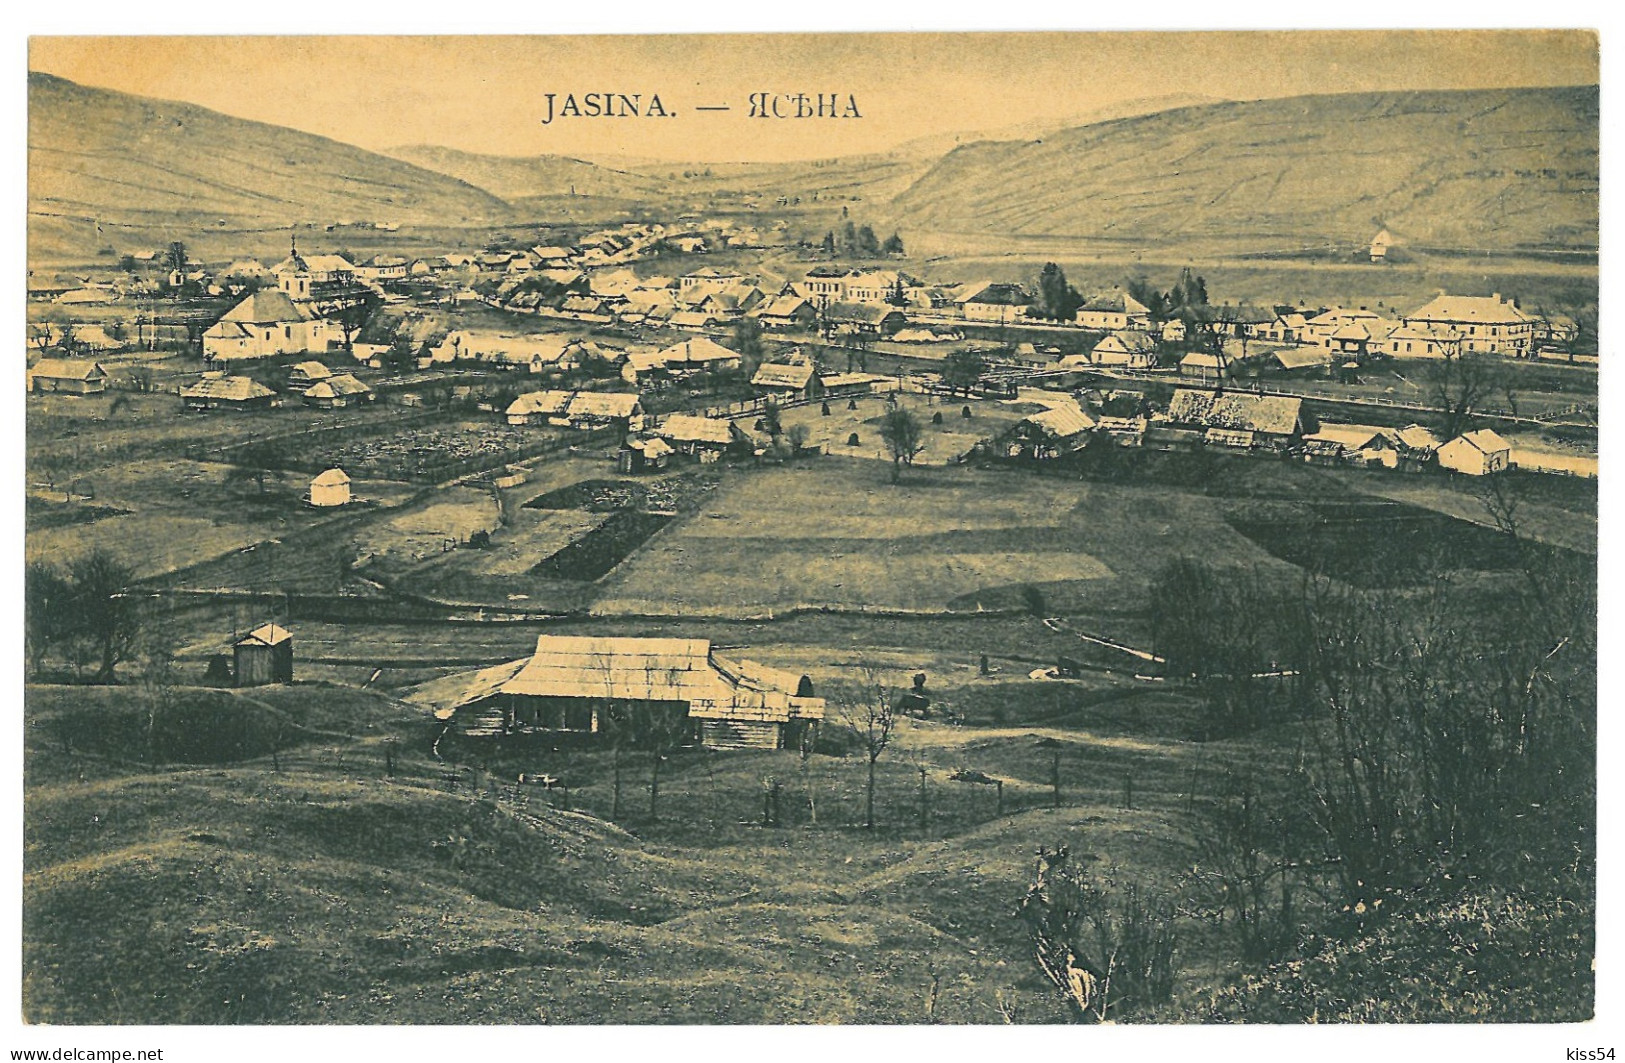 UK 30 - 23441 JASINA, Panorama, Ukraine - Old Postcard - Unused - Ukraine